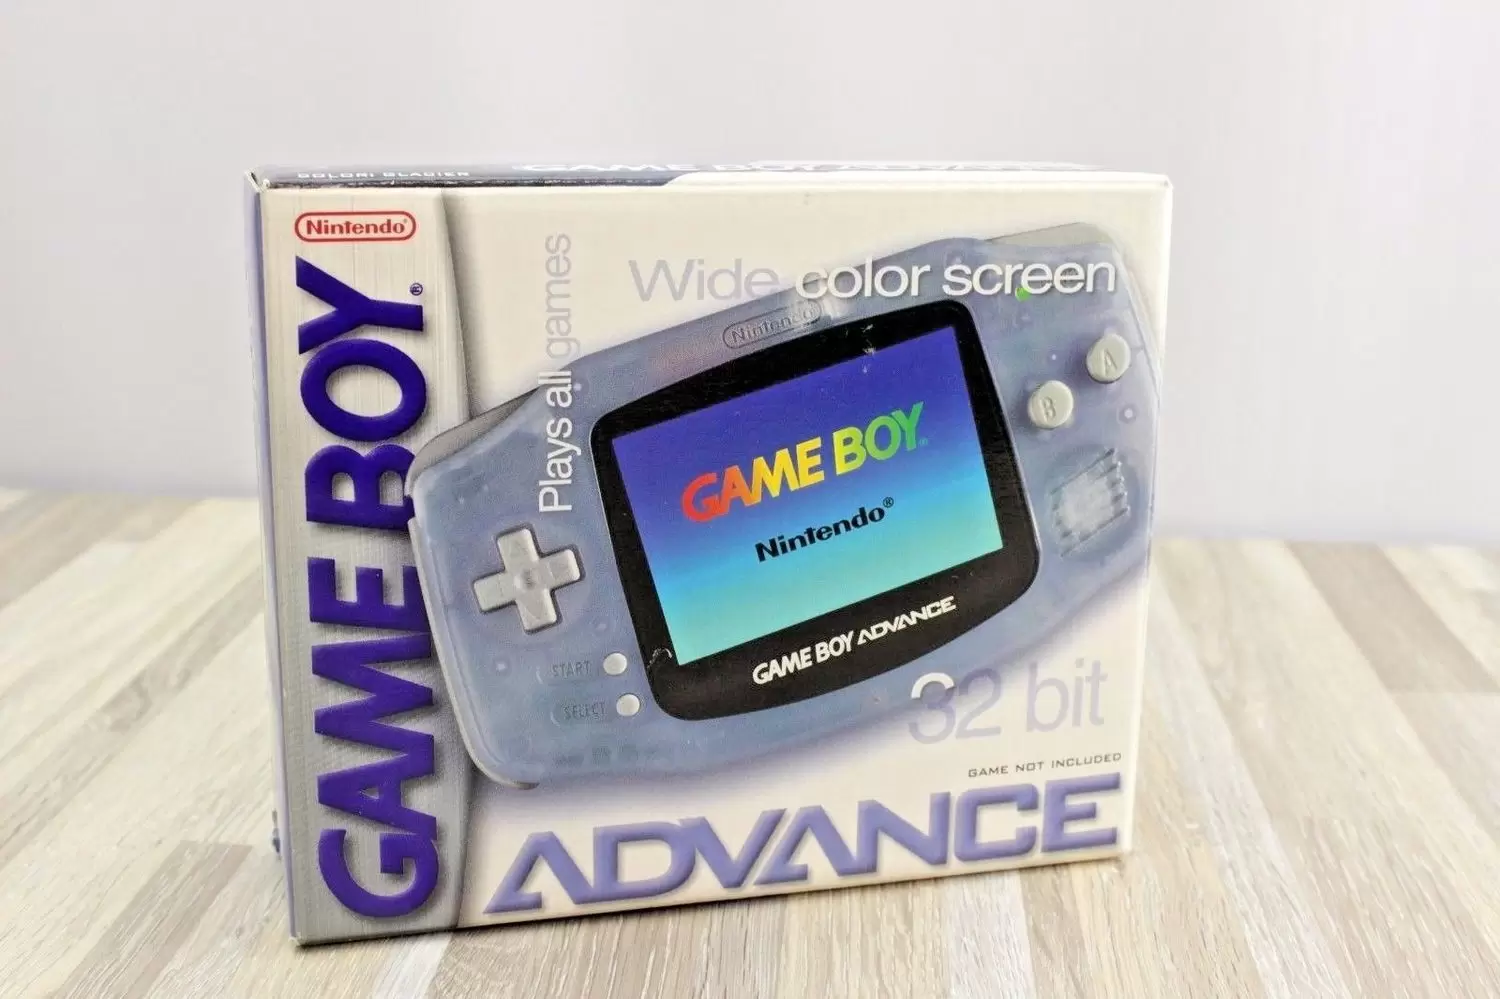 About Game Boy Advance